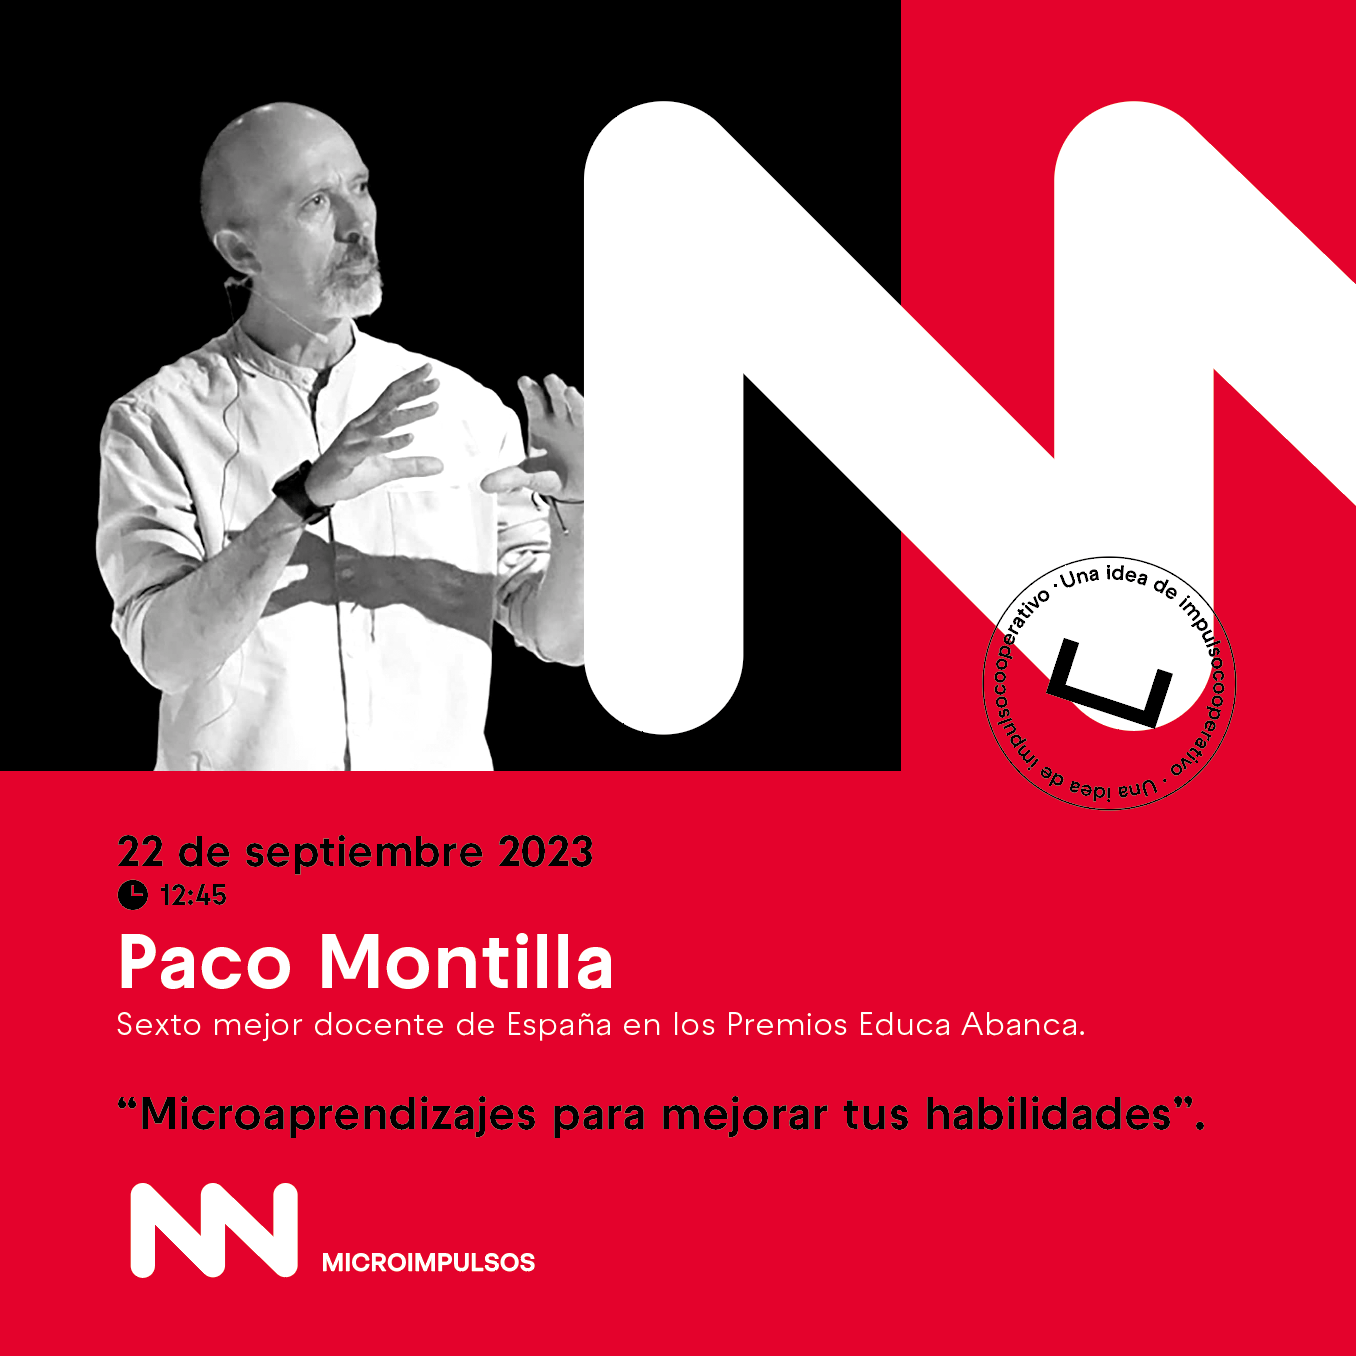 Paco Montilla Microimpulsos GenionLab